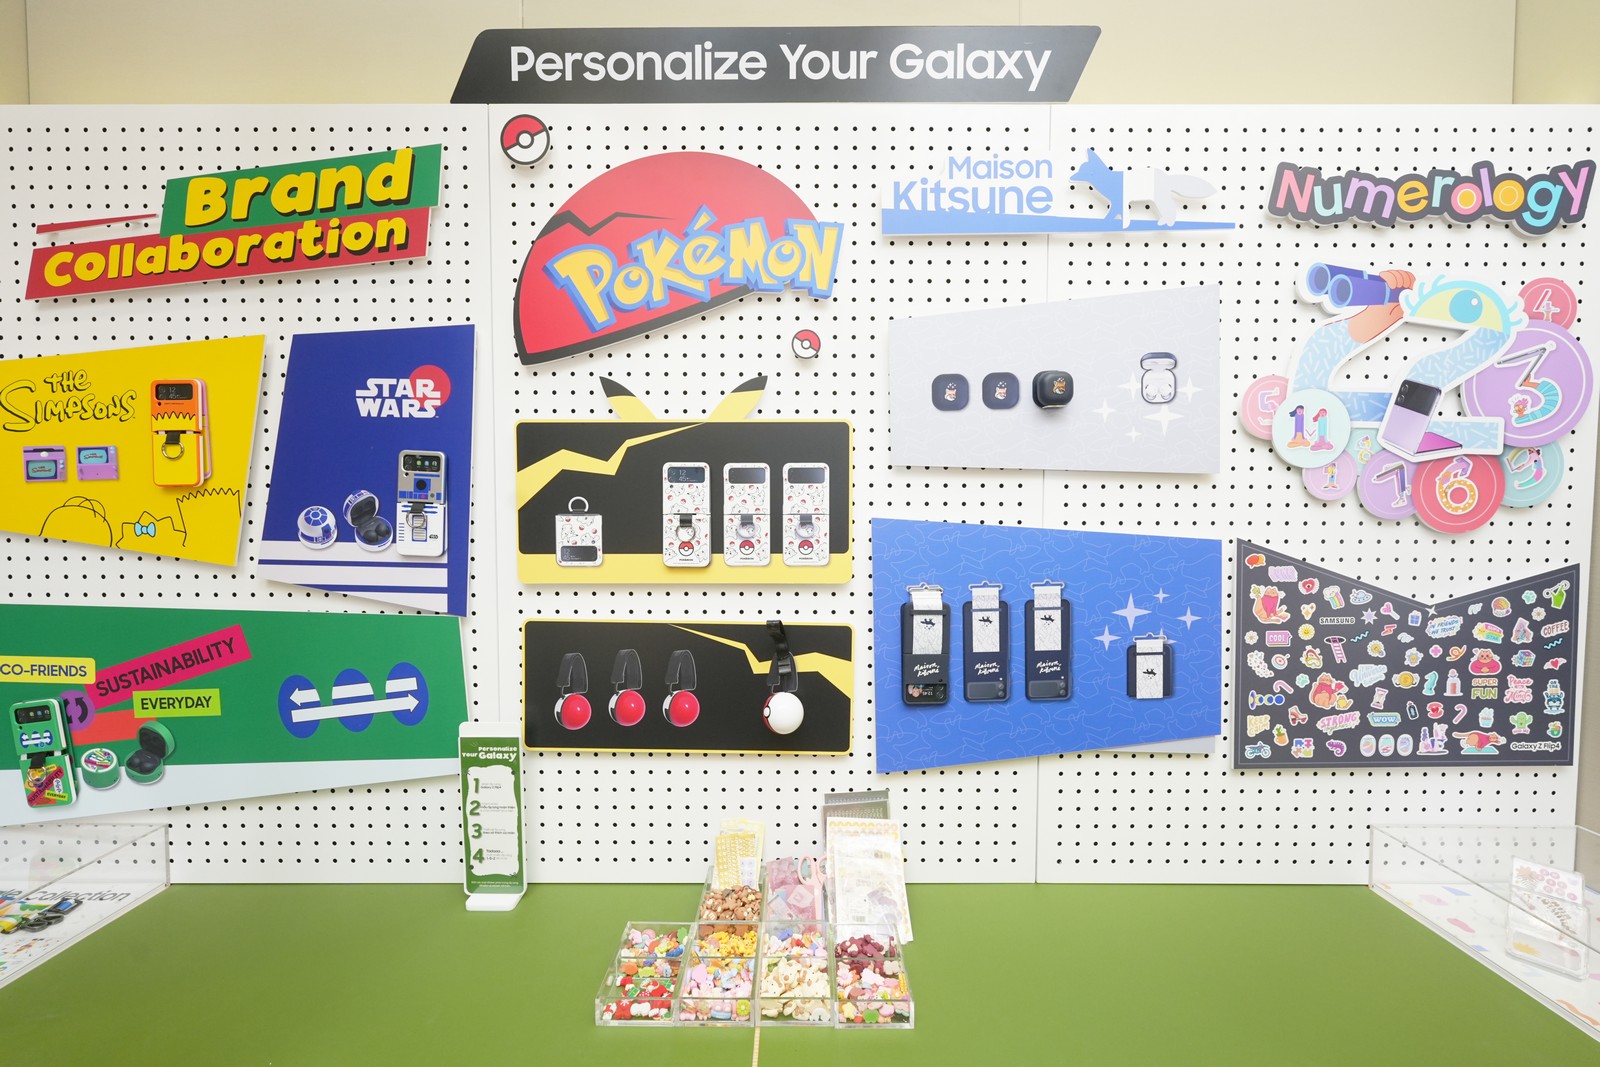 “Cá nhân hóa cùng Galaxy”: Không gian phụ kiện độc quyền tại chuỗi cửa hàng trải nghiệm Samsung